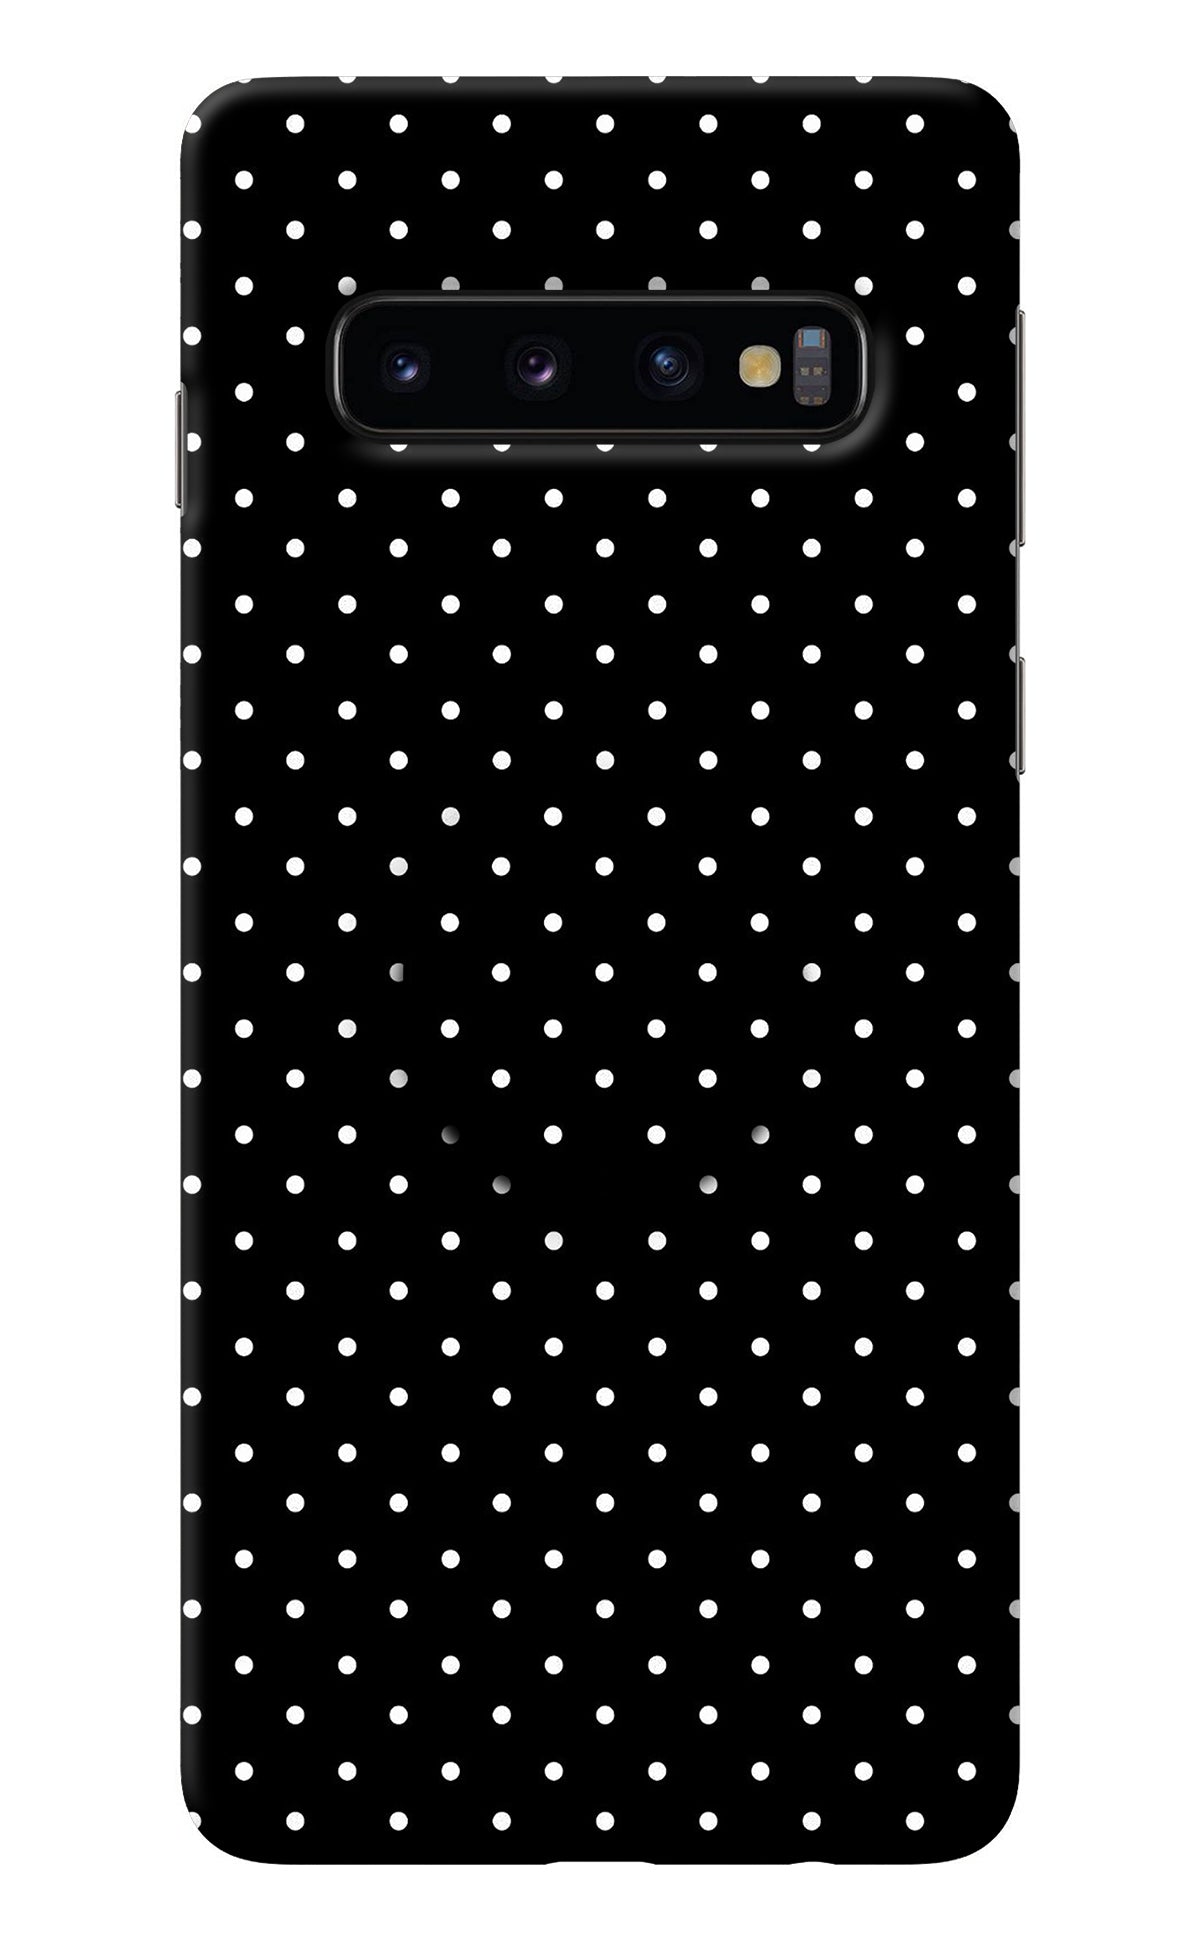 White Dots Samsung S10 Pop Case